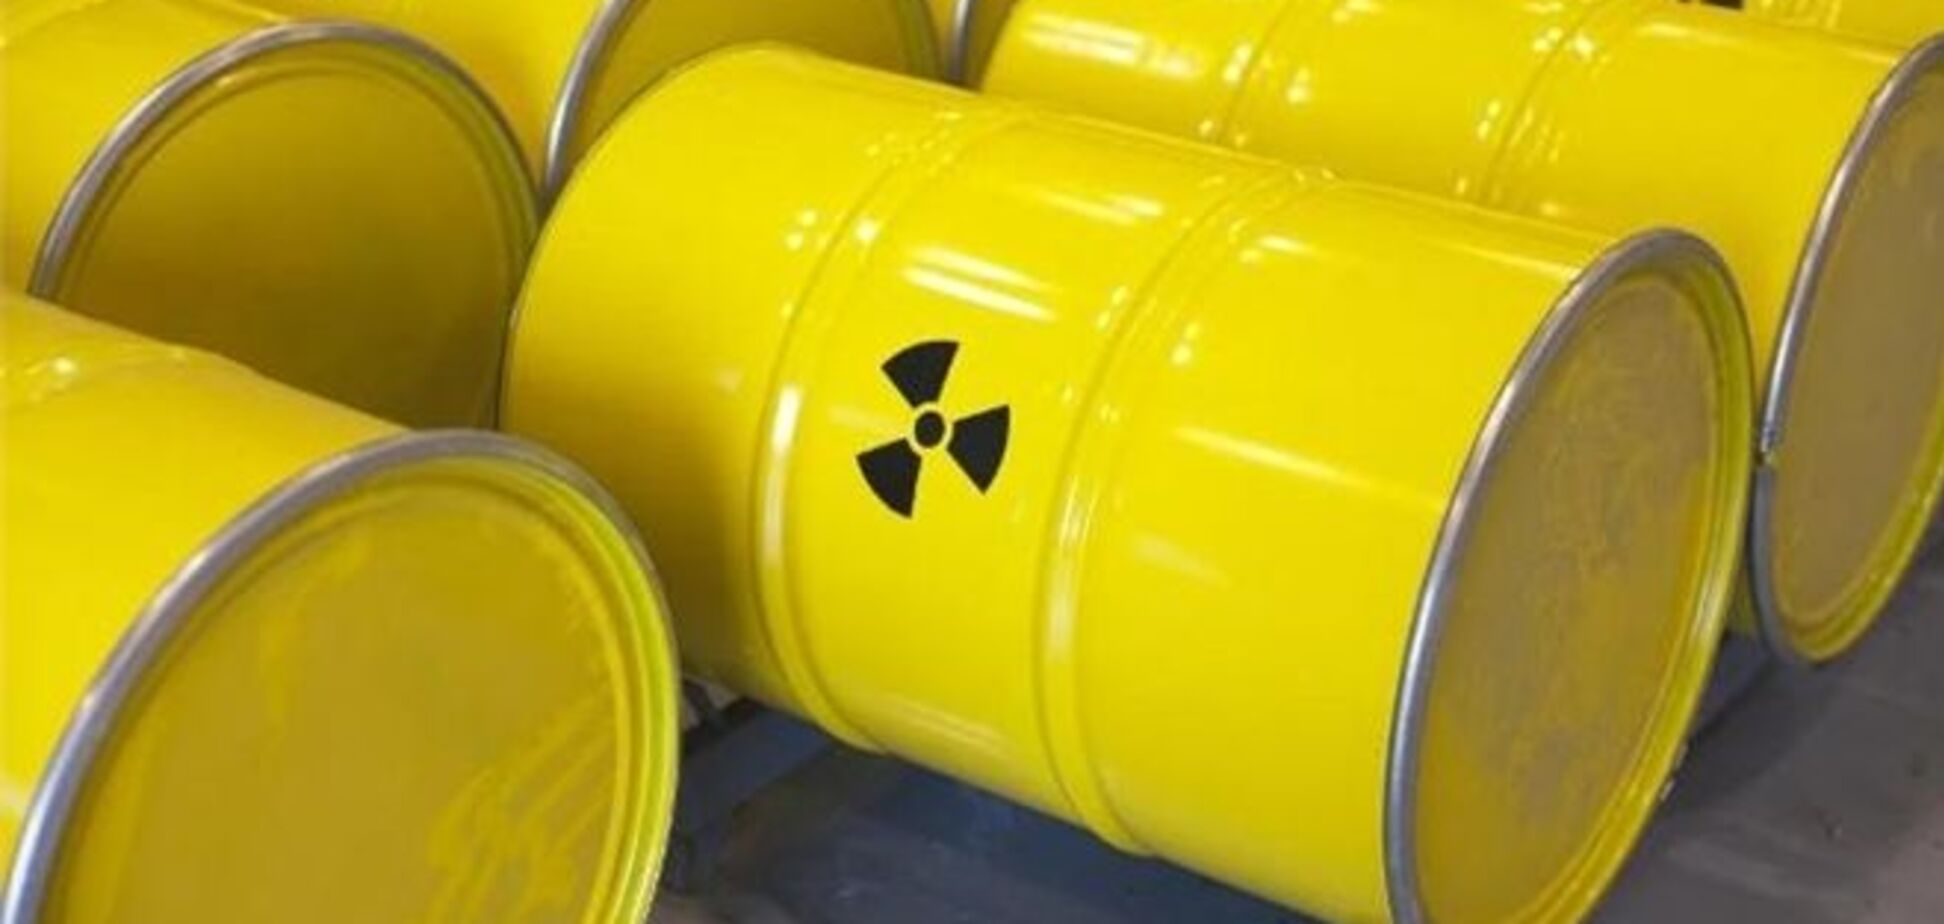 Украина начала строительство завода по производству ядерного топлива